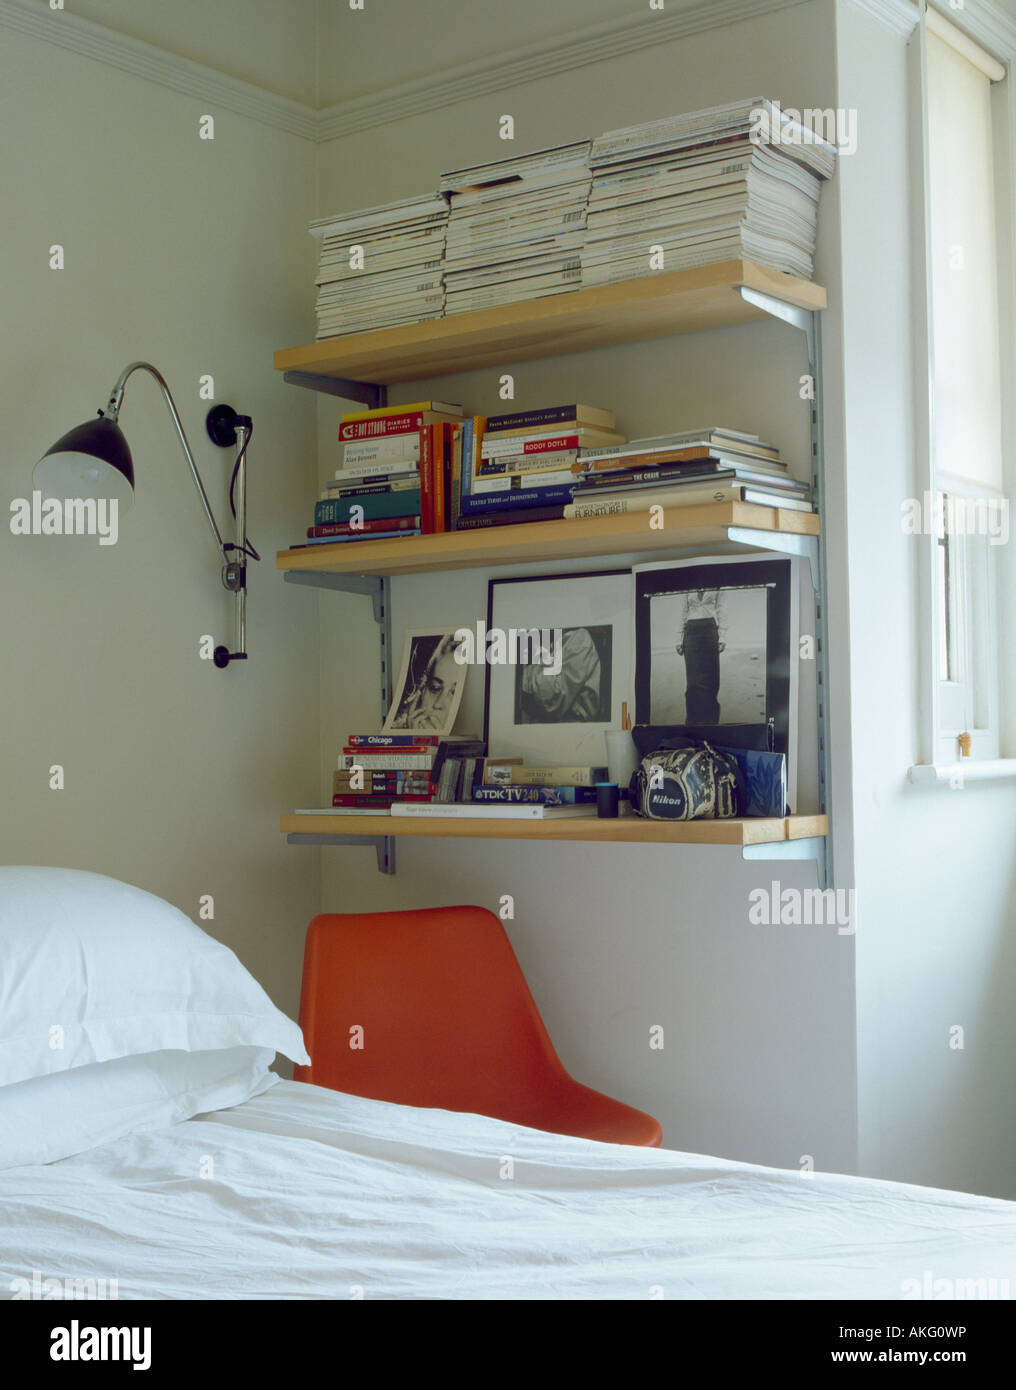 Wandleuchte neben Bücherregale Ecke von Schlafzimmer über dem Bett  Stockfotografie - Alamy